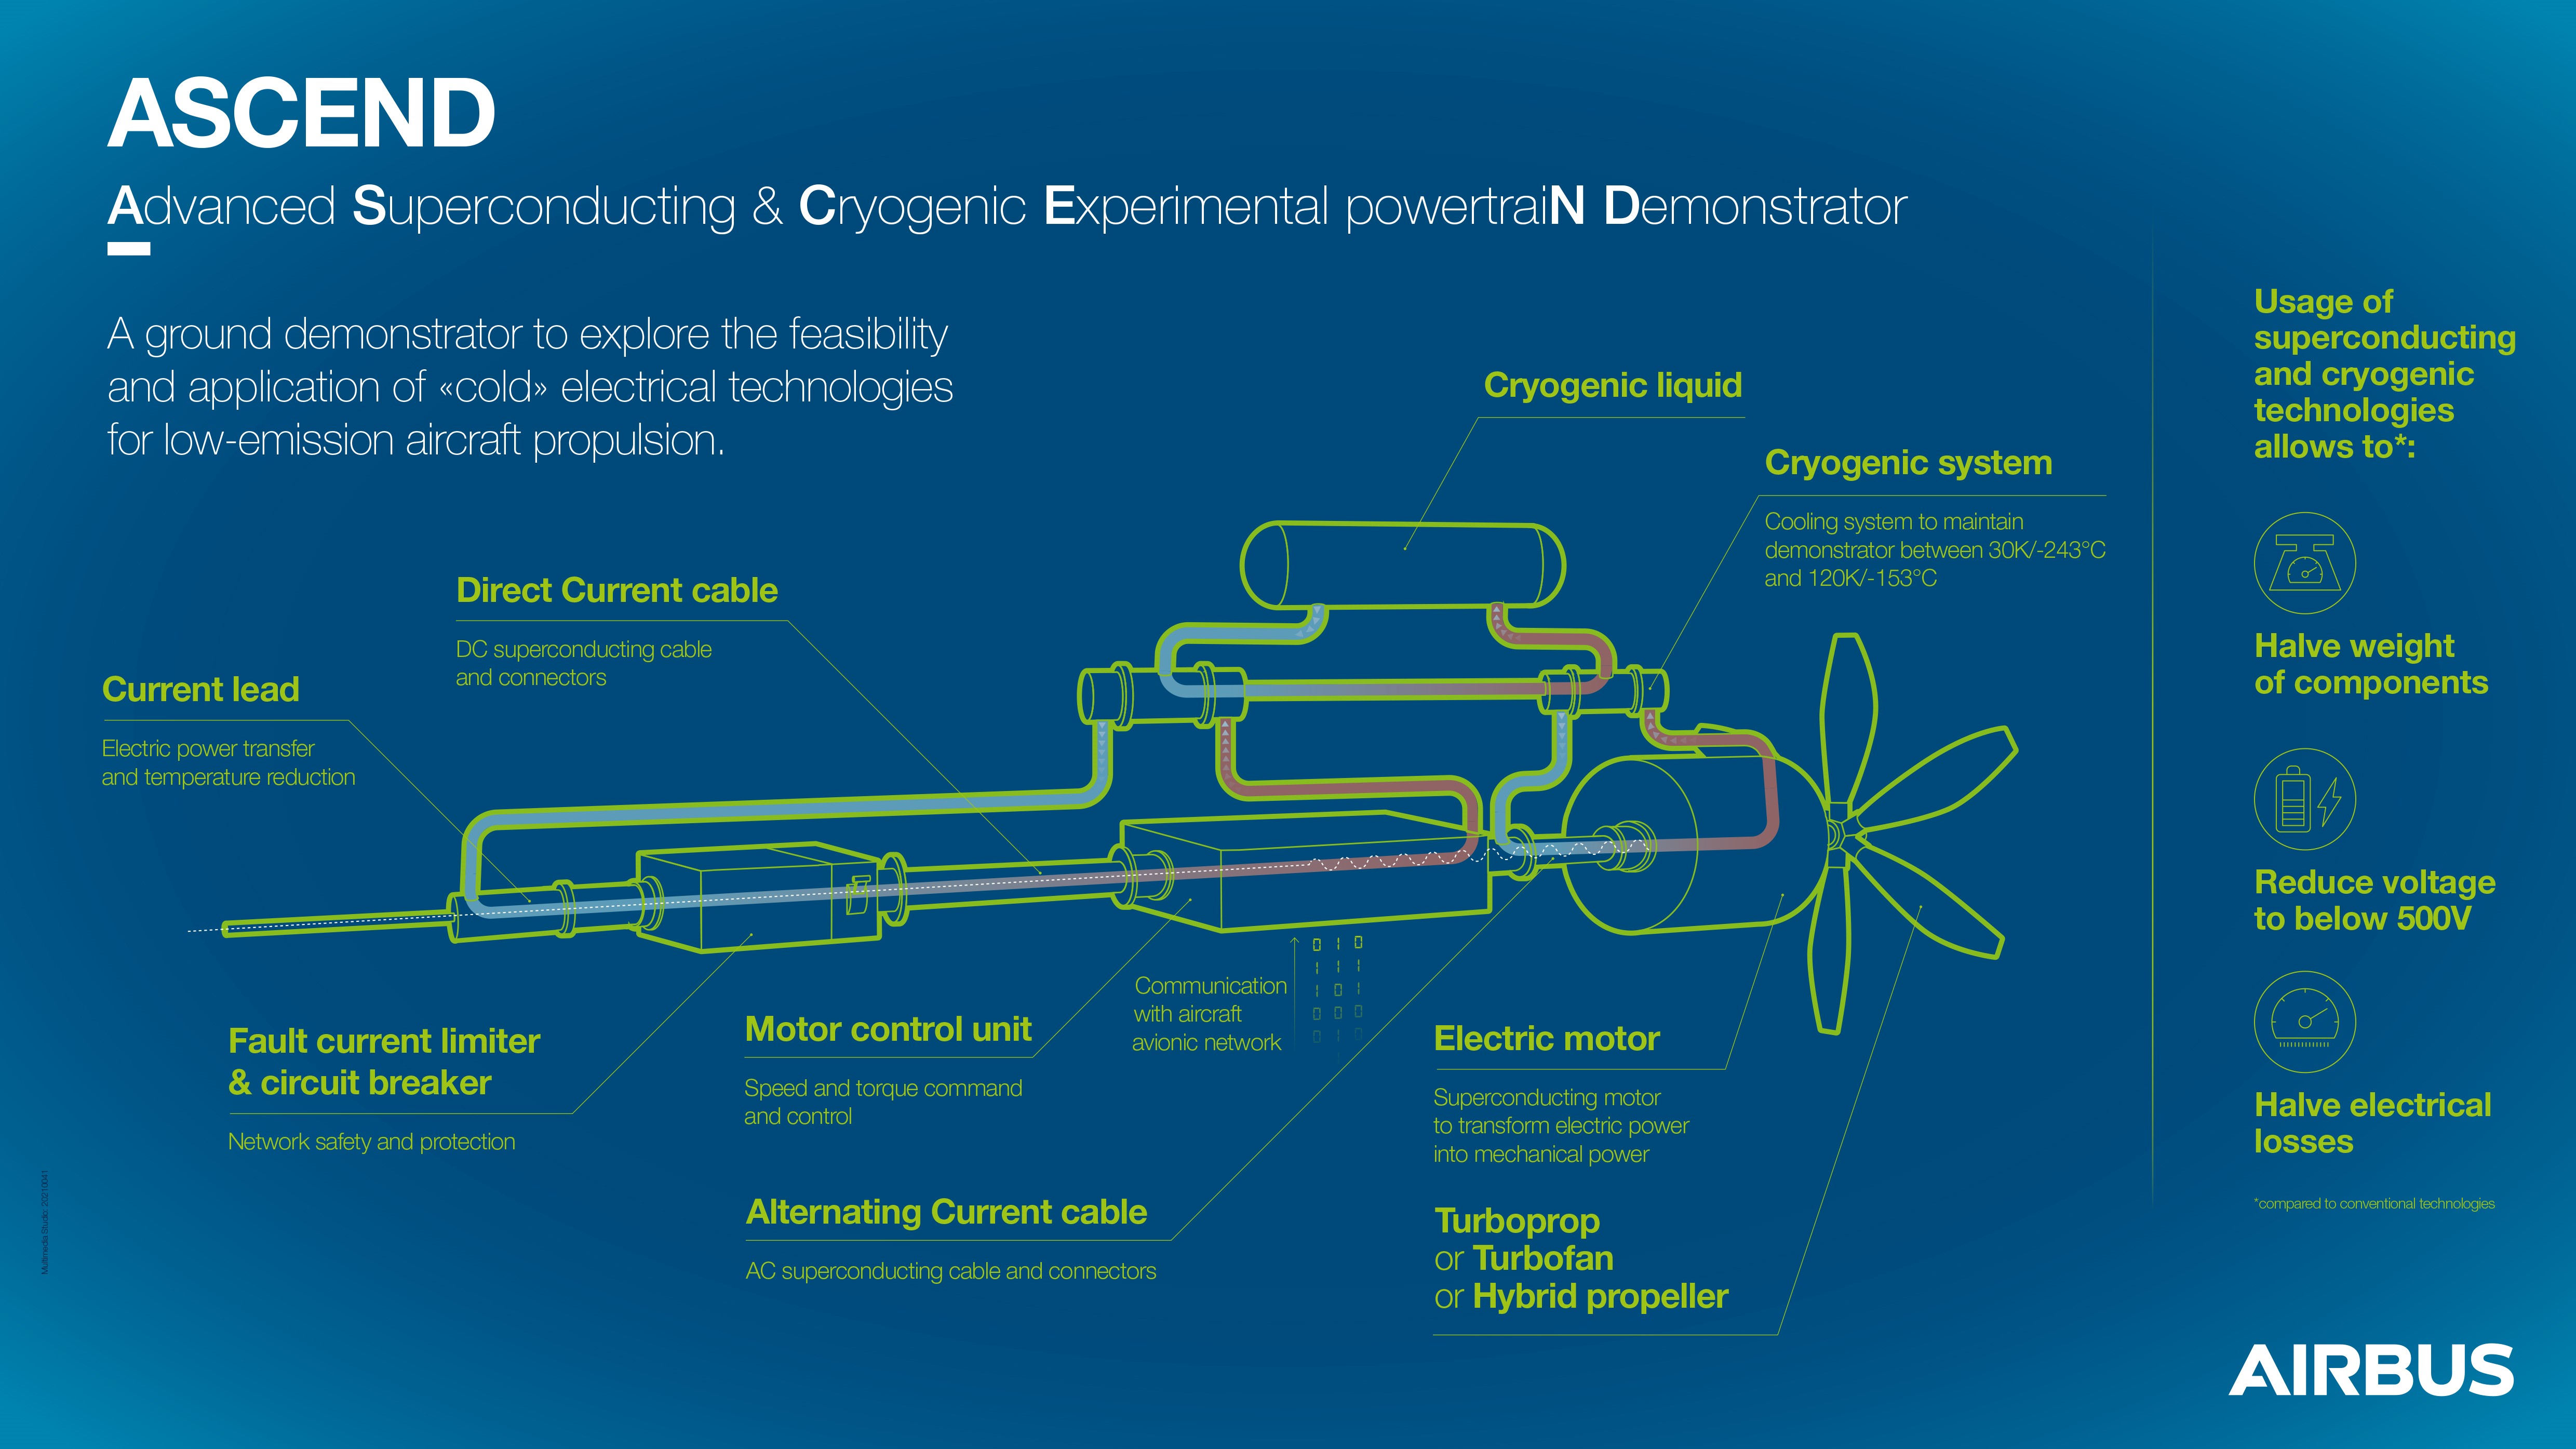 ASCEND doit permettre d'optimiser l'architecture de propulsion pour un vol à faibles émissions - Crédit photo : Airbus